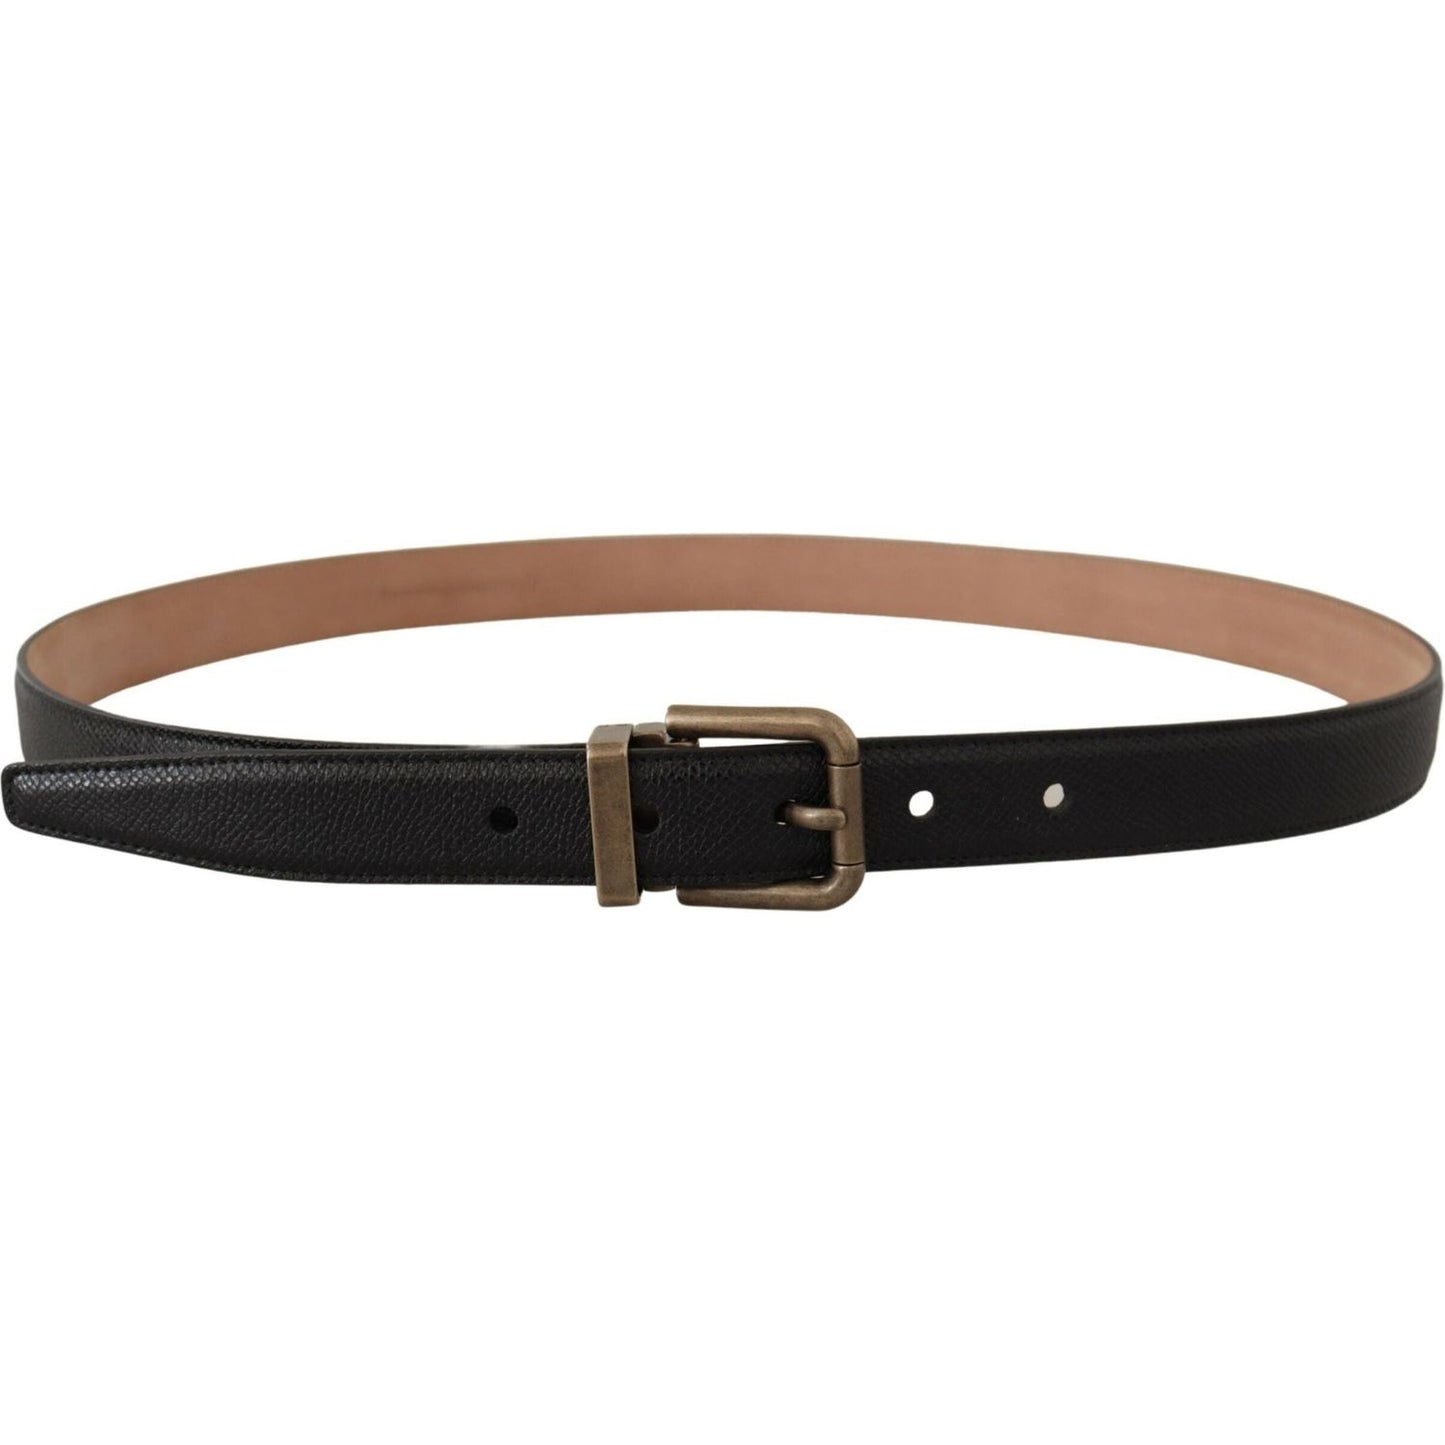 Dolce & Gabbana Elegant Black Leather Belt with Vintage Metal Buckle black-brown-backed-leather-brass-buckle-belt